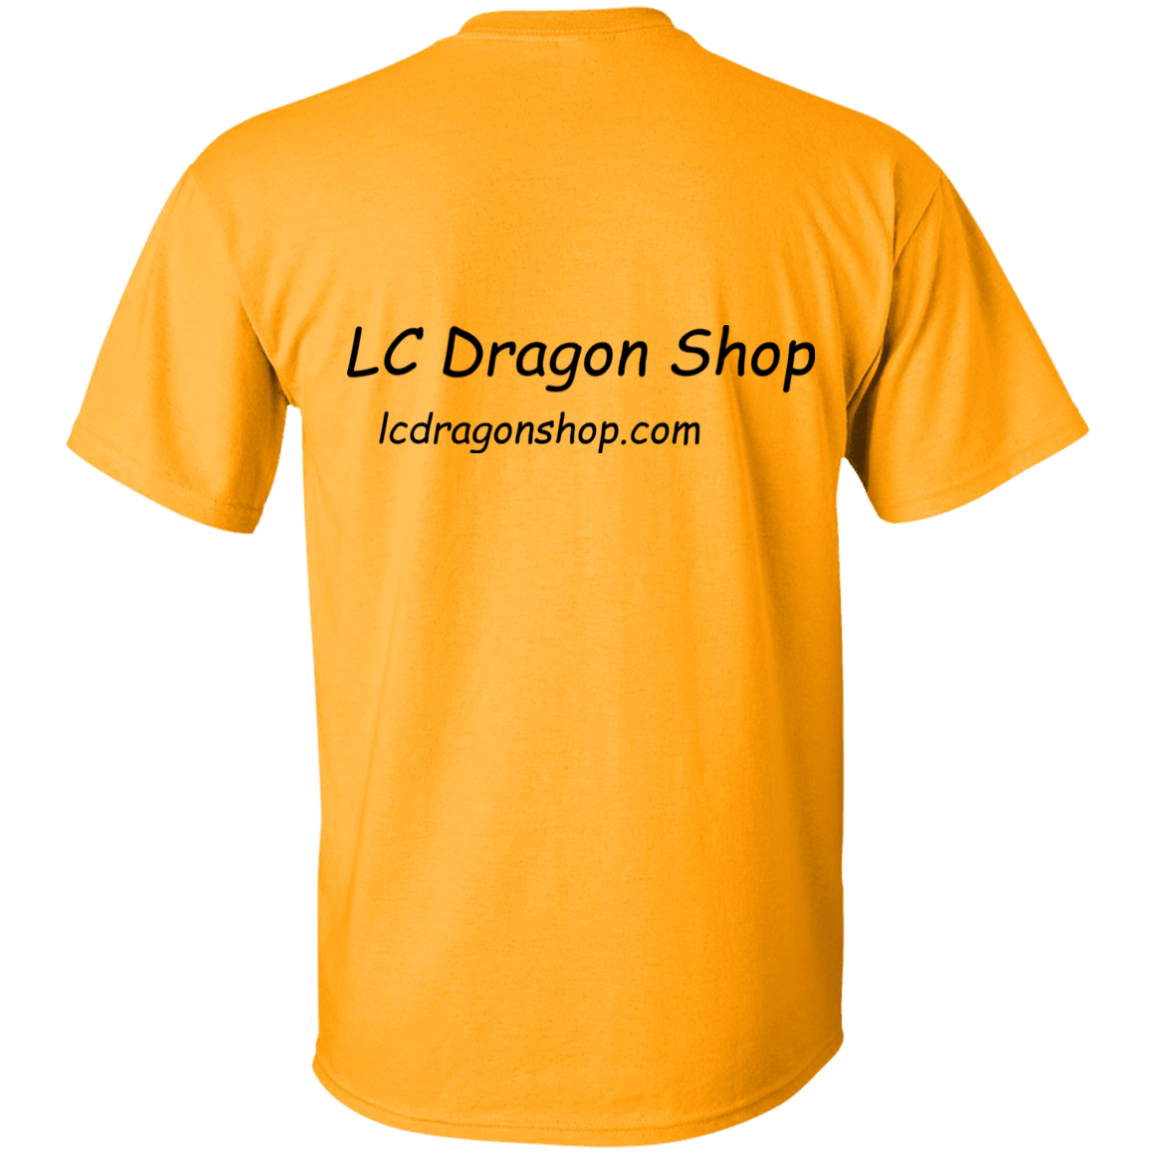 Dragon Waggin' Kids T-Shirt!